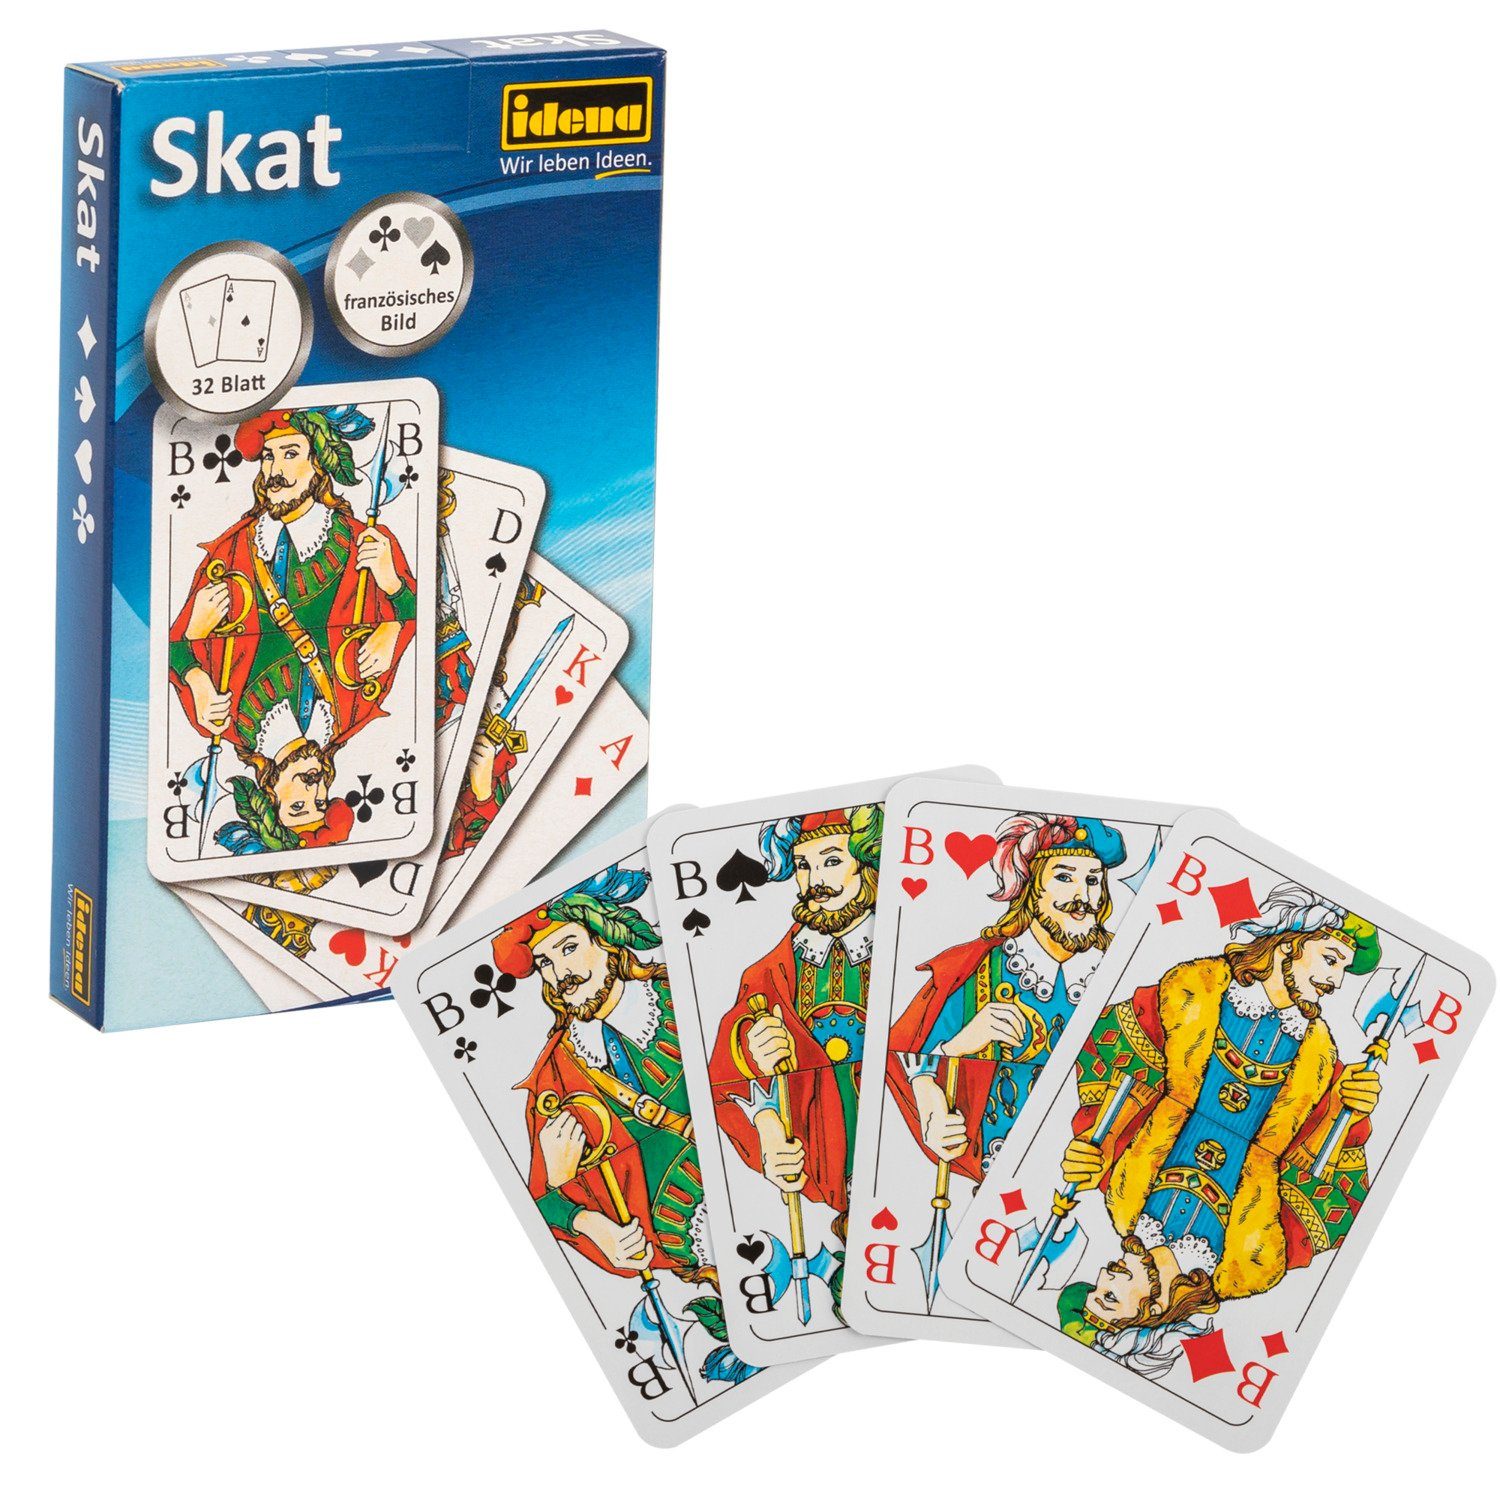 Skatspiel Spiel, 6250100 mit Idena - Karten, französischem 32 5,9 ca. Idena Blatt,